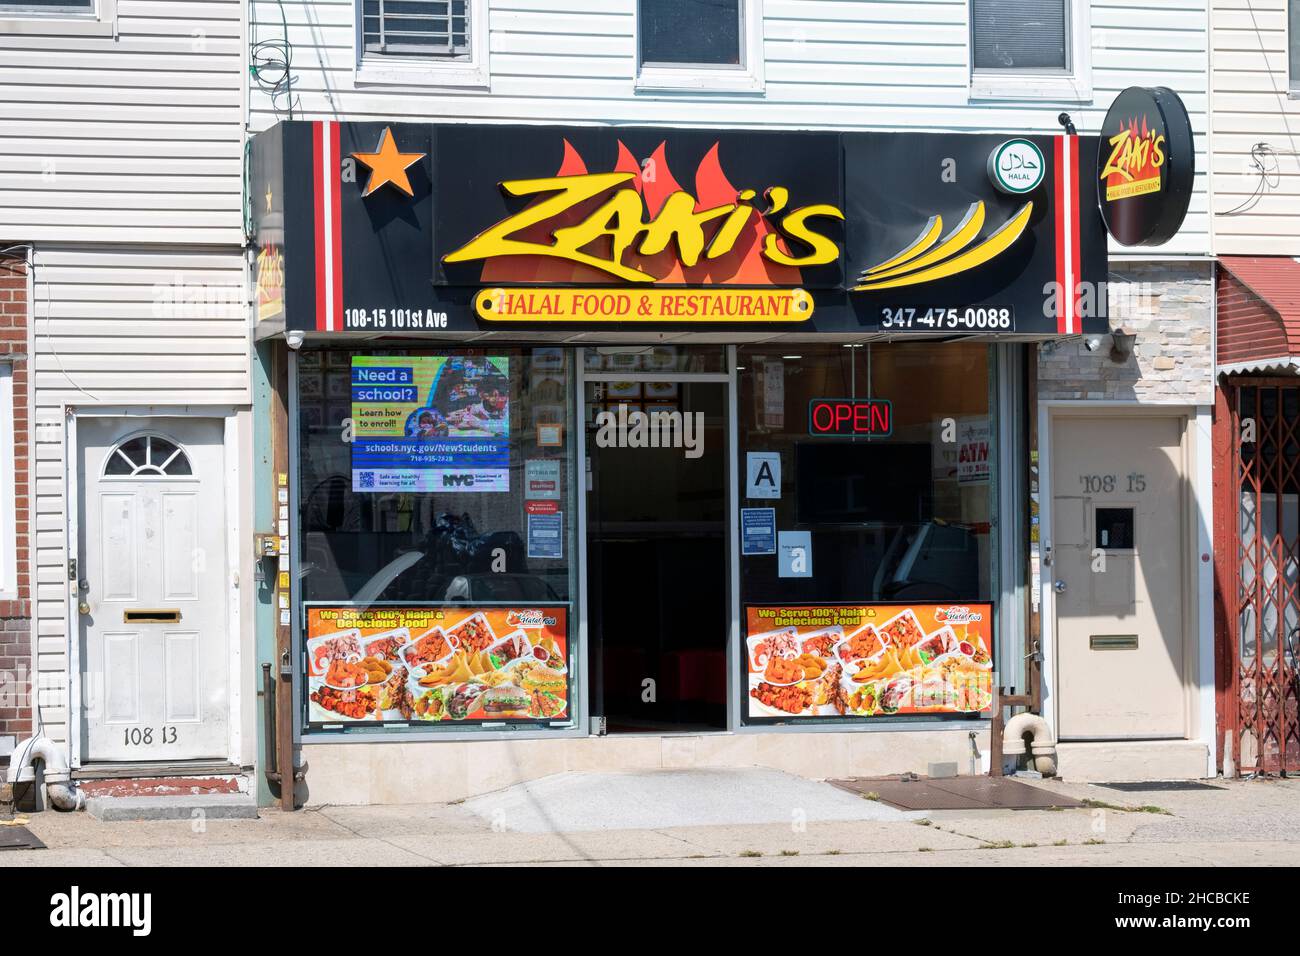 Das Äußere des Zaki's Halal Food & Restaurant an der 101st Avenue im South Ozone Park, Queens. Es bietet afghanische Speisen und Fleisch. Stockfoto